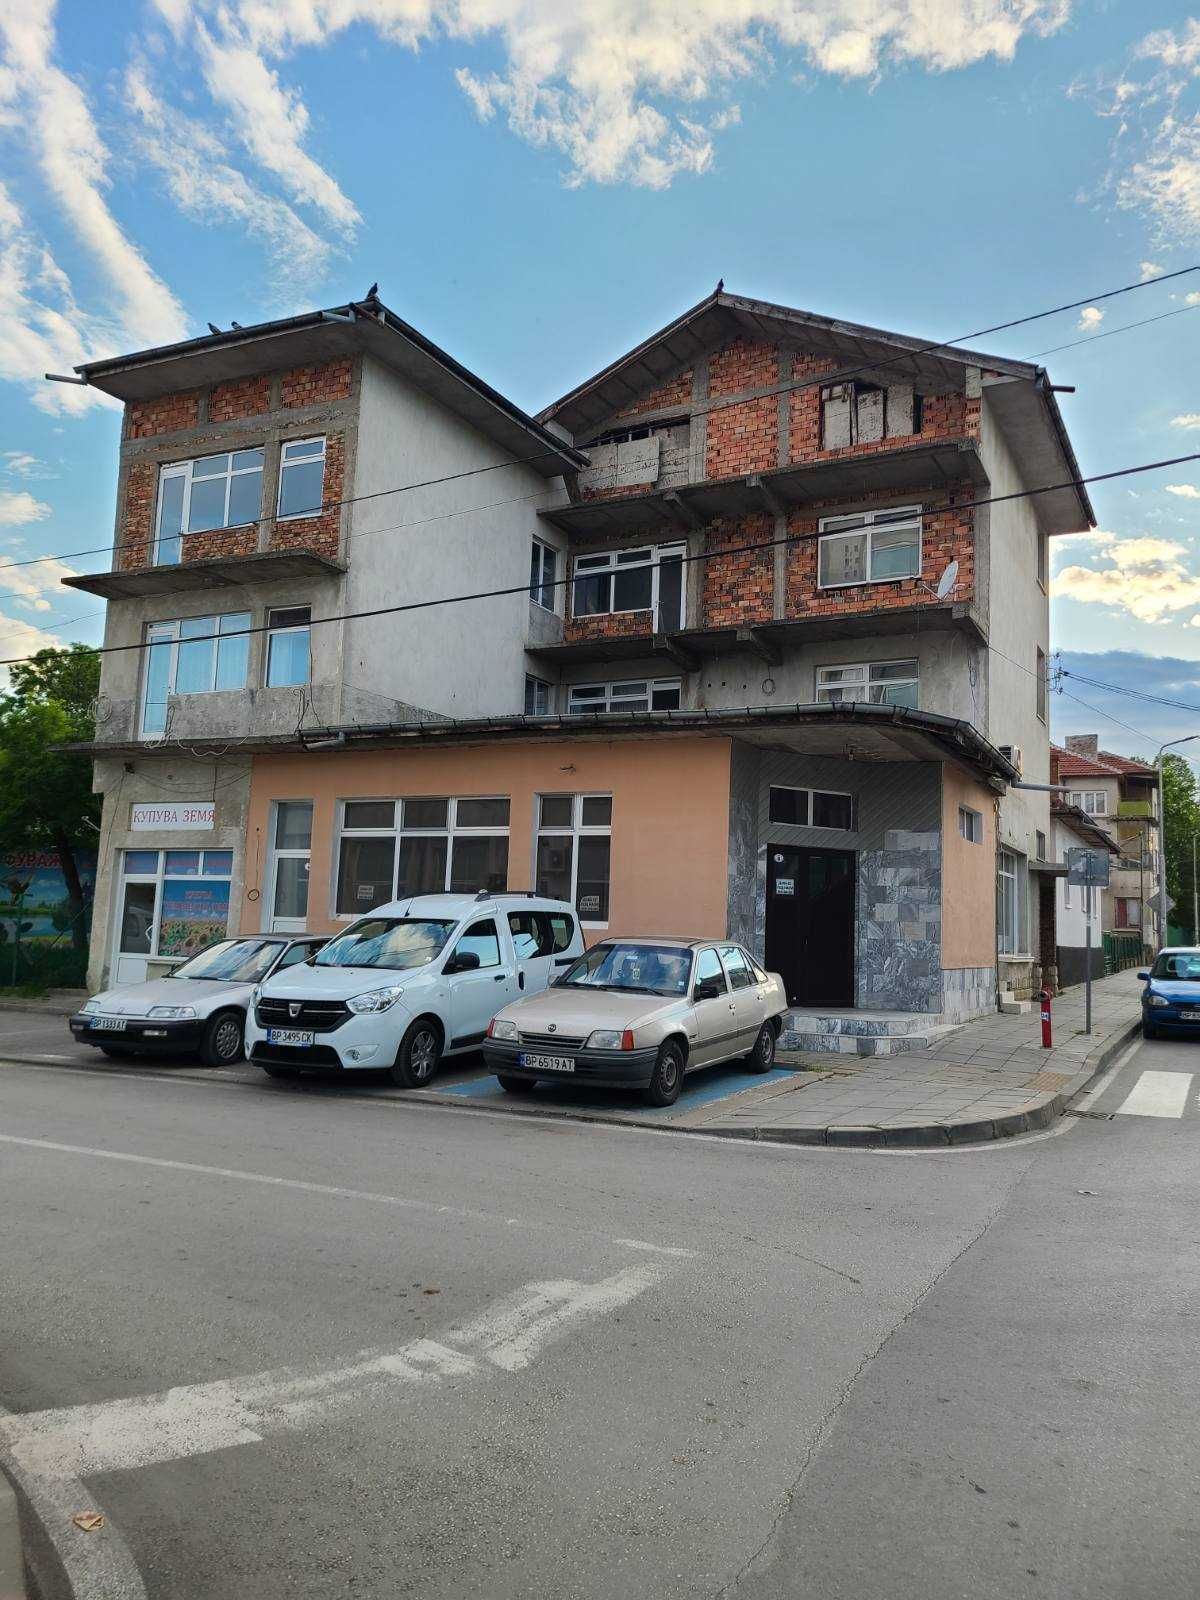 Продава се къща в центъра на Бяла Слатина срещу общината и площада